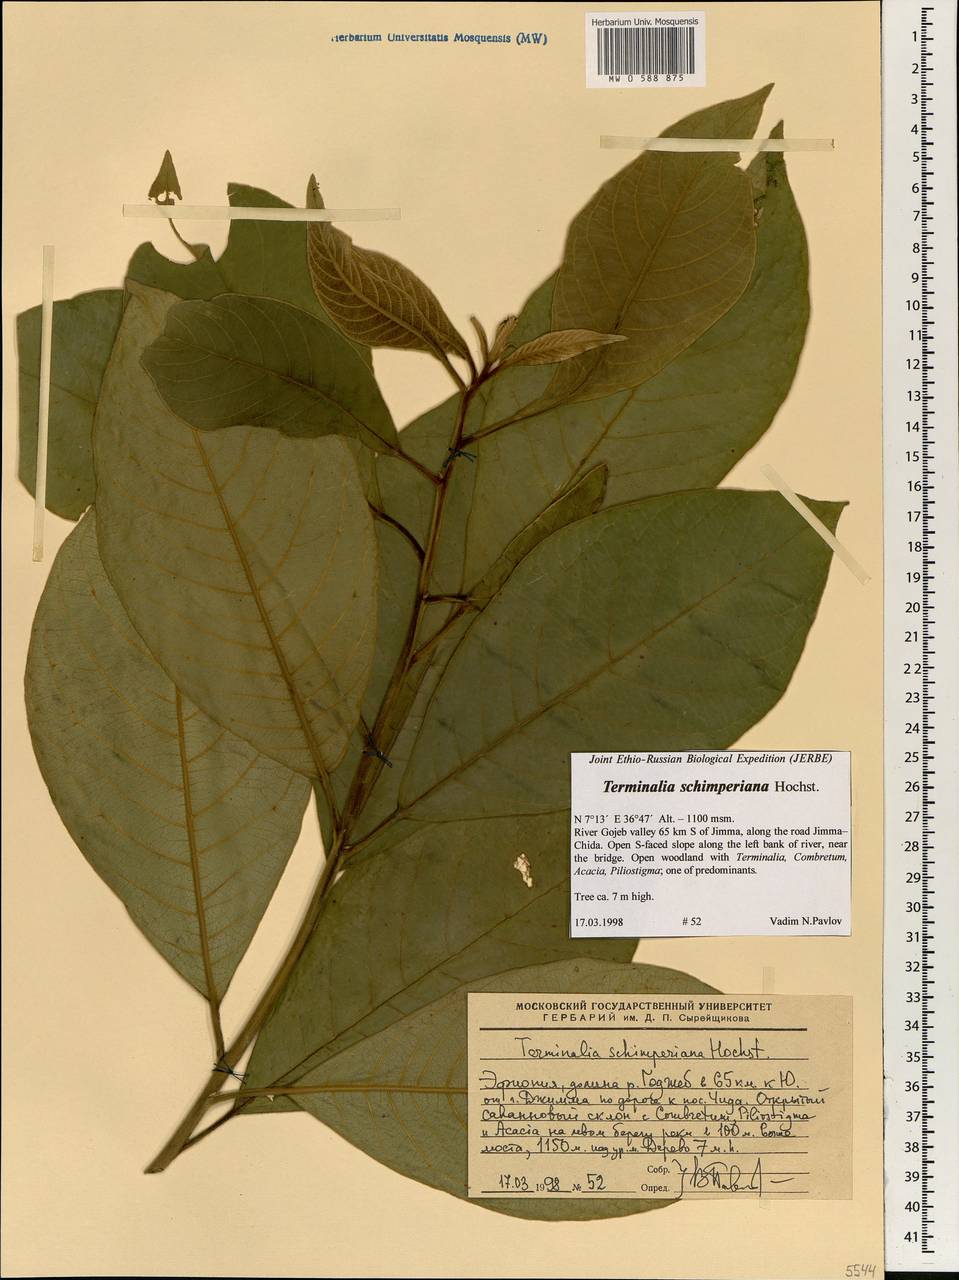 Terminalia schimperiana Hochst. ex Engl. & Diels, Africa (AFR) (Ethiopia)